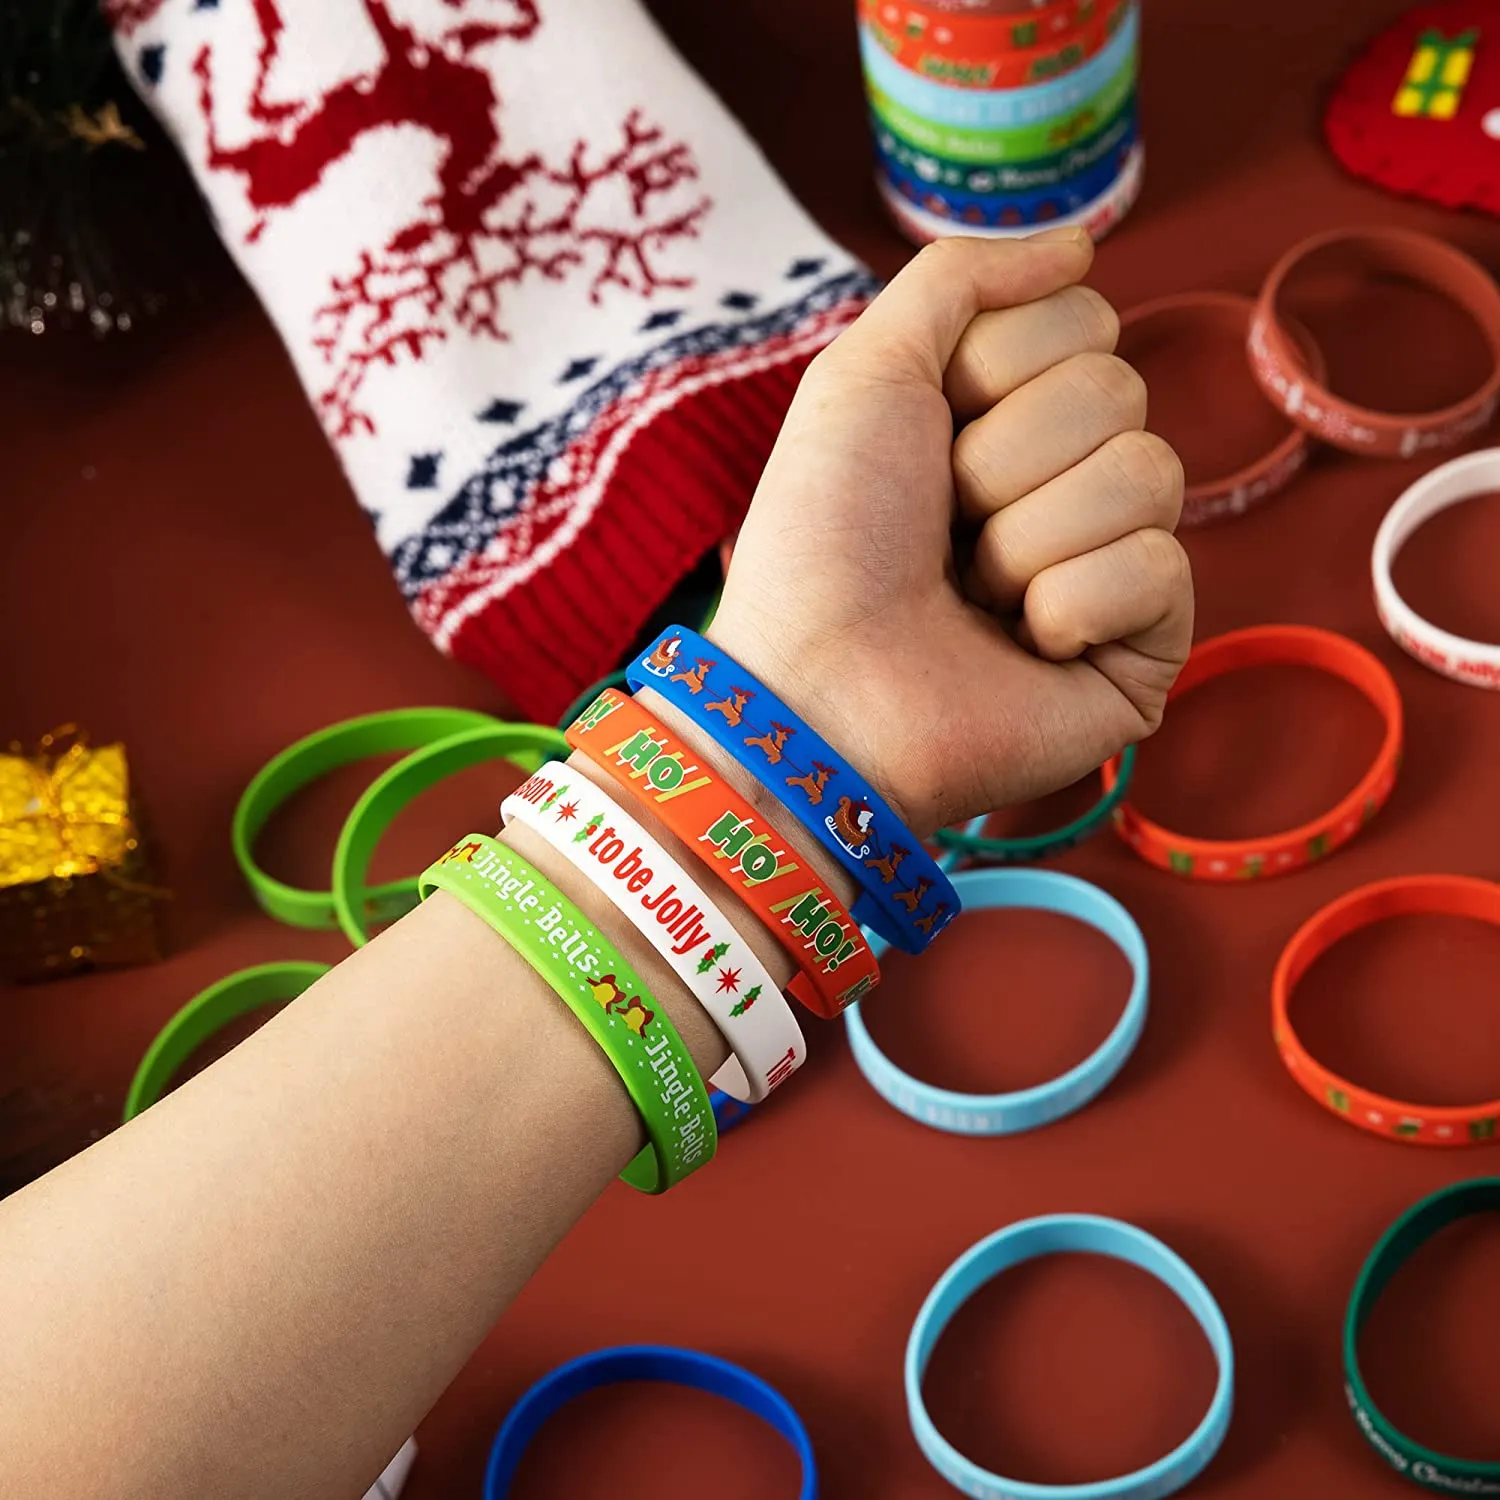 Amazon.com: 不适用 Friendship Bracelets Kit, 10Pcs Handmade Colorful Nepal  Woven Friendship Bracelets with a Sliding Knot Closure, Unisex Adjustable,  Mix Color Random : Toys & Games